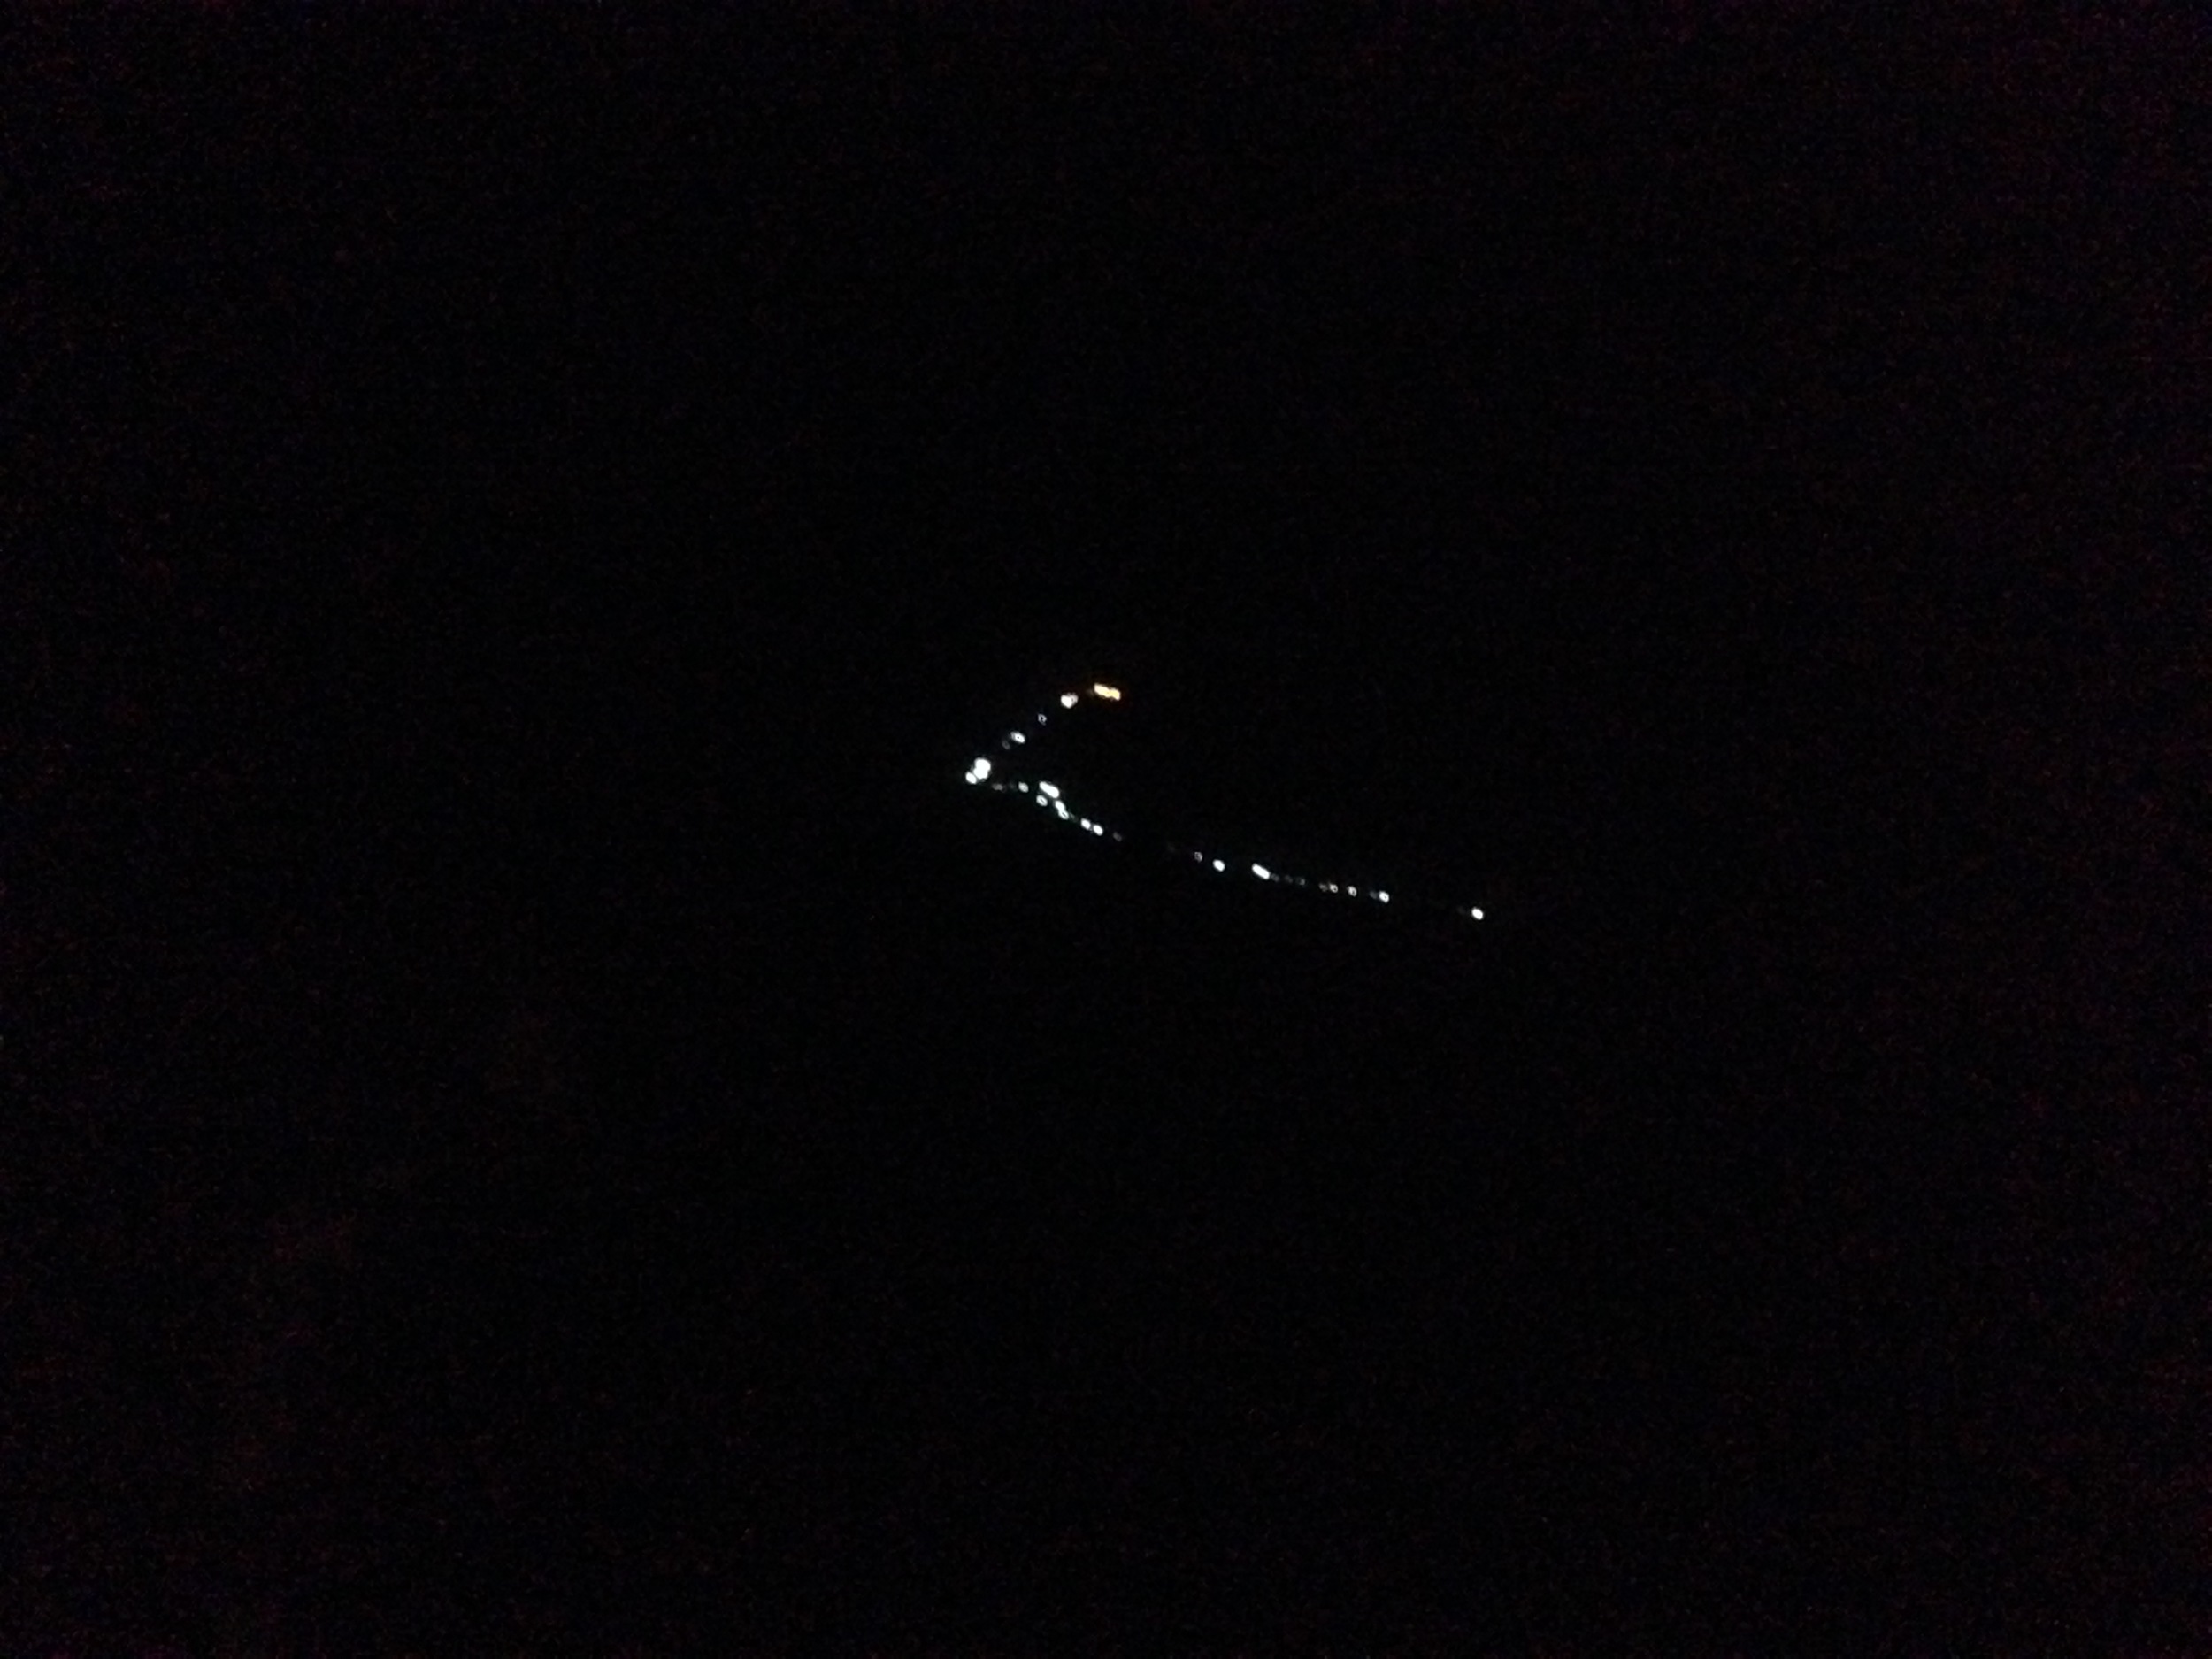  Adam's Peak lit up at night. 